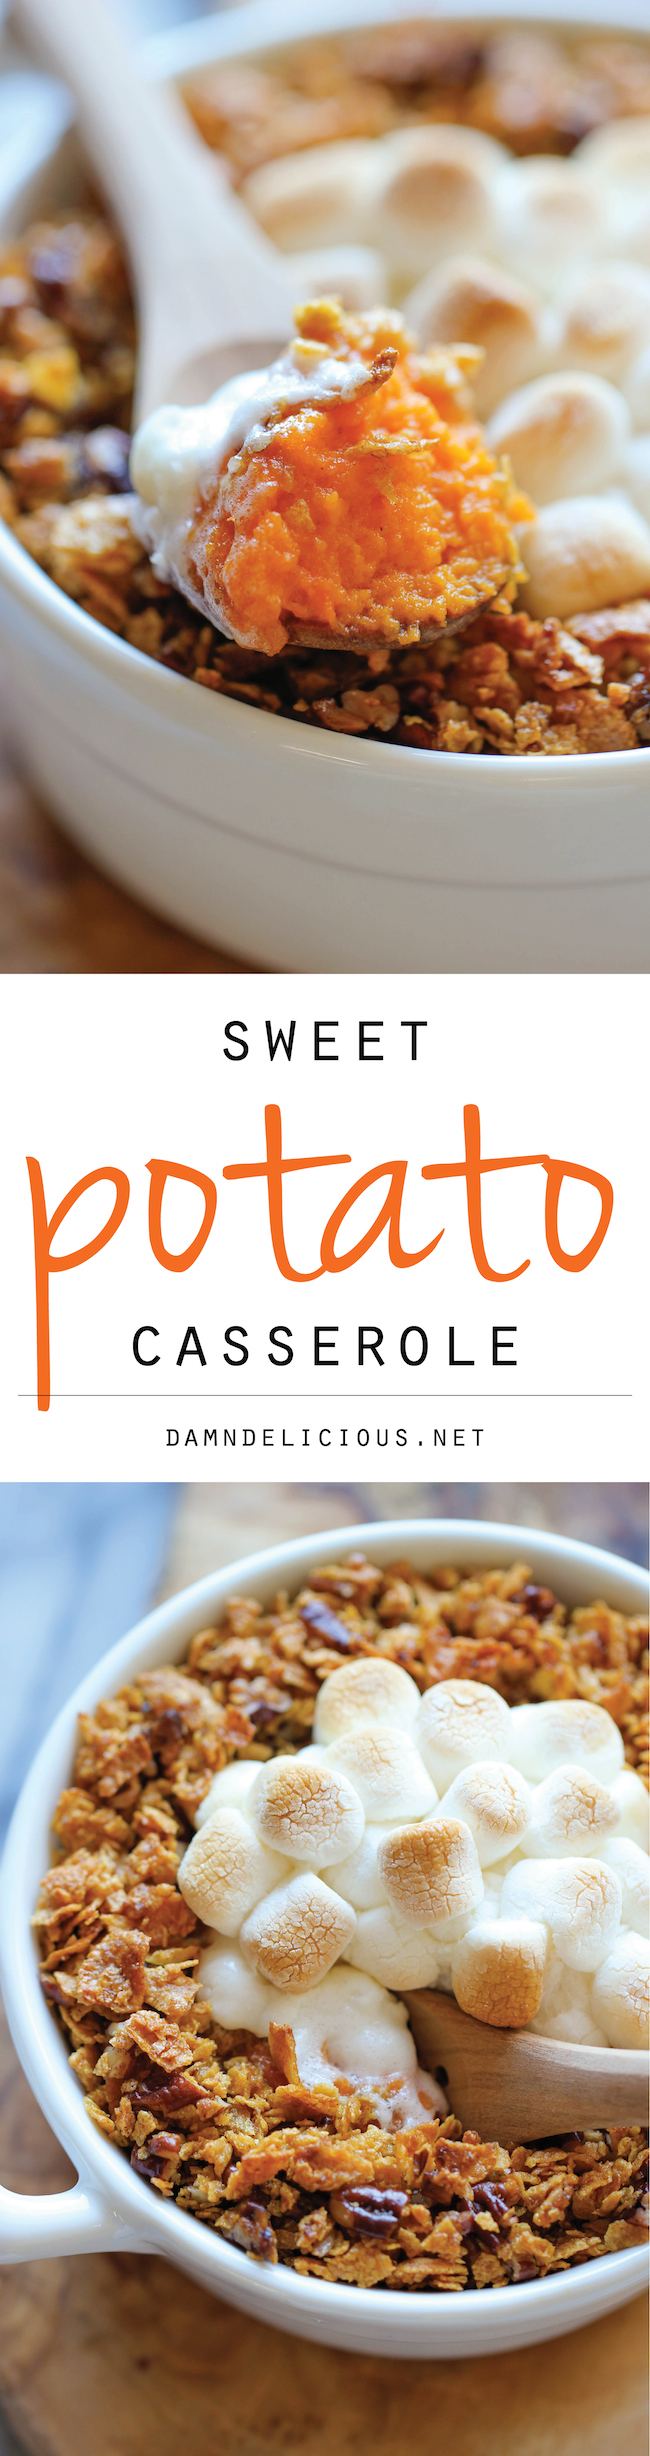 Sweet Potato Casserole - Damn Delicious